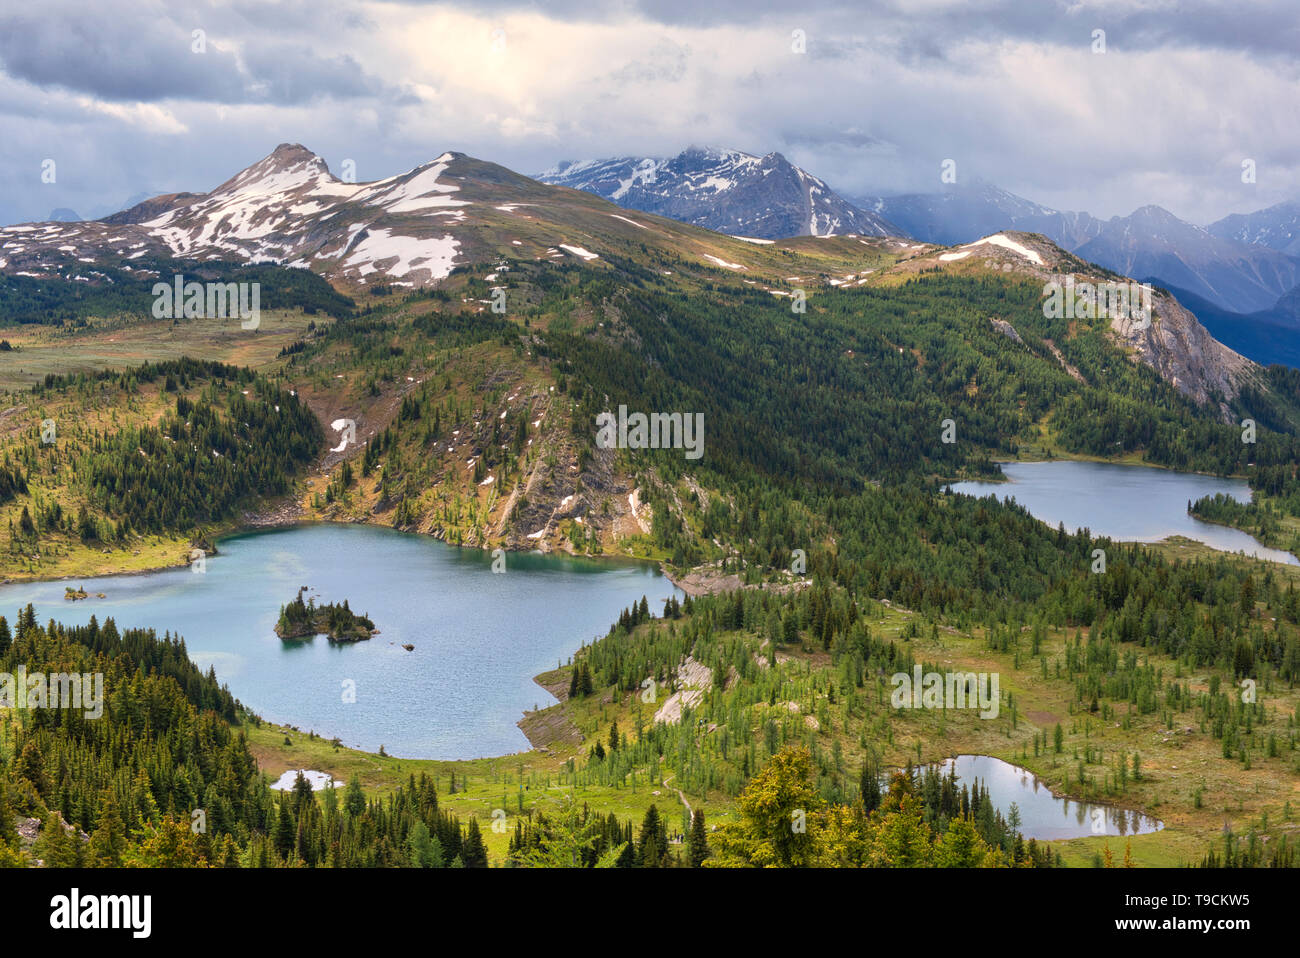 Isola di roccia Lago (sinistra) e Lago Laryx (destro) nella regione alpina delle Montagne Rocciose Canadesi. Sunshine Meadows. Lo stato di Alberta in Canada Foto Stock